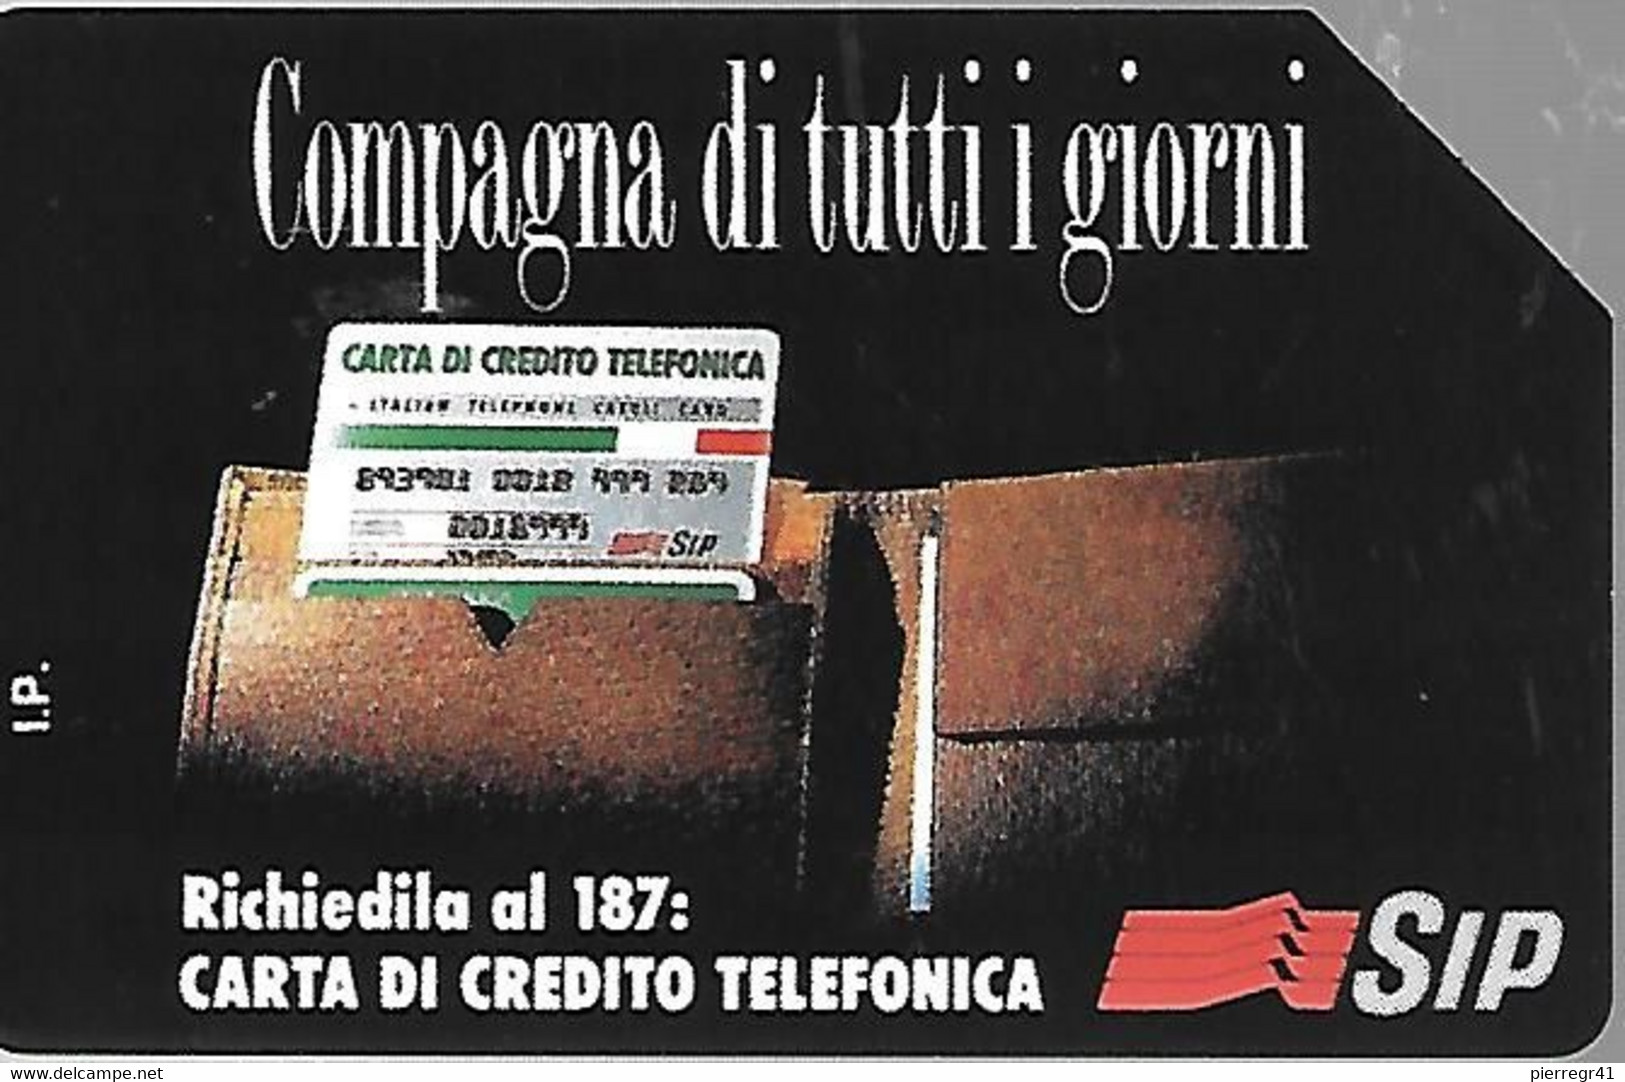 CARTE -ITALIE-Serie Pubblishe Figurate-Campagna-215-Catalogue Golden-15000L/30/06/95- -Utilisé-TBE-RARE - Pubbliche Precursori